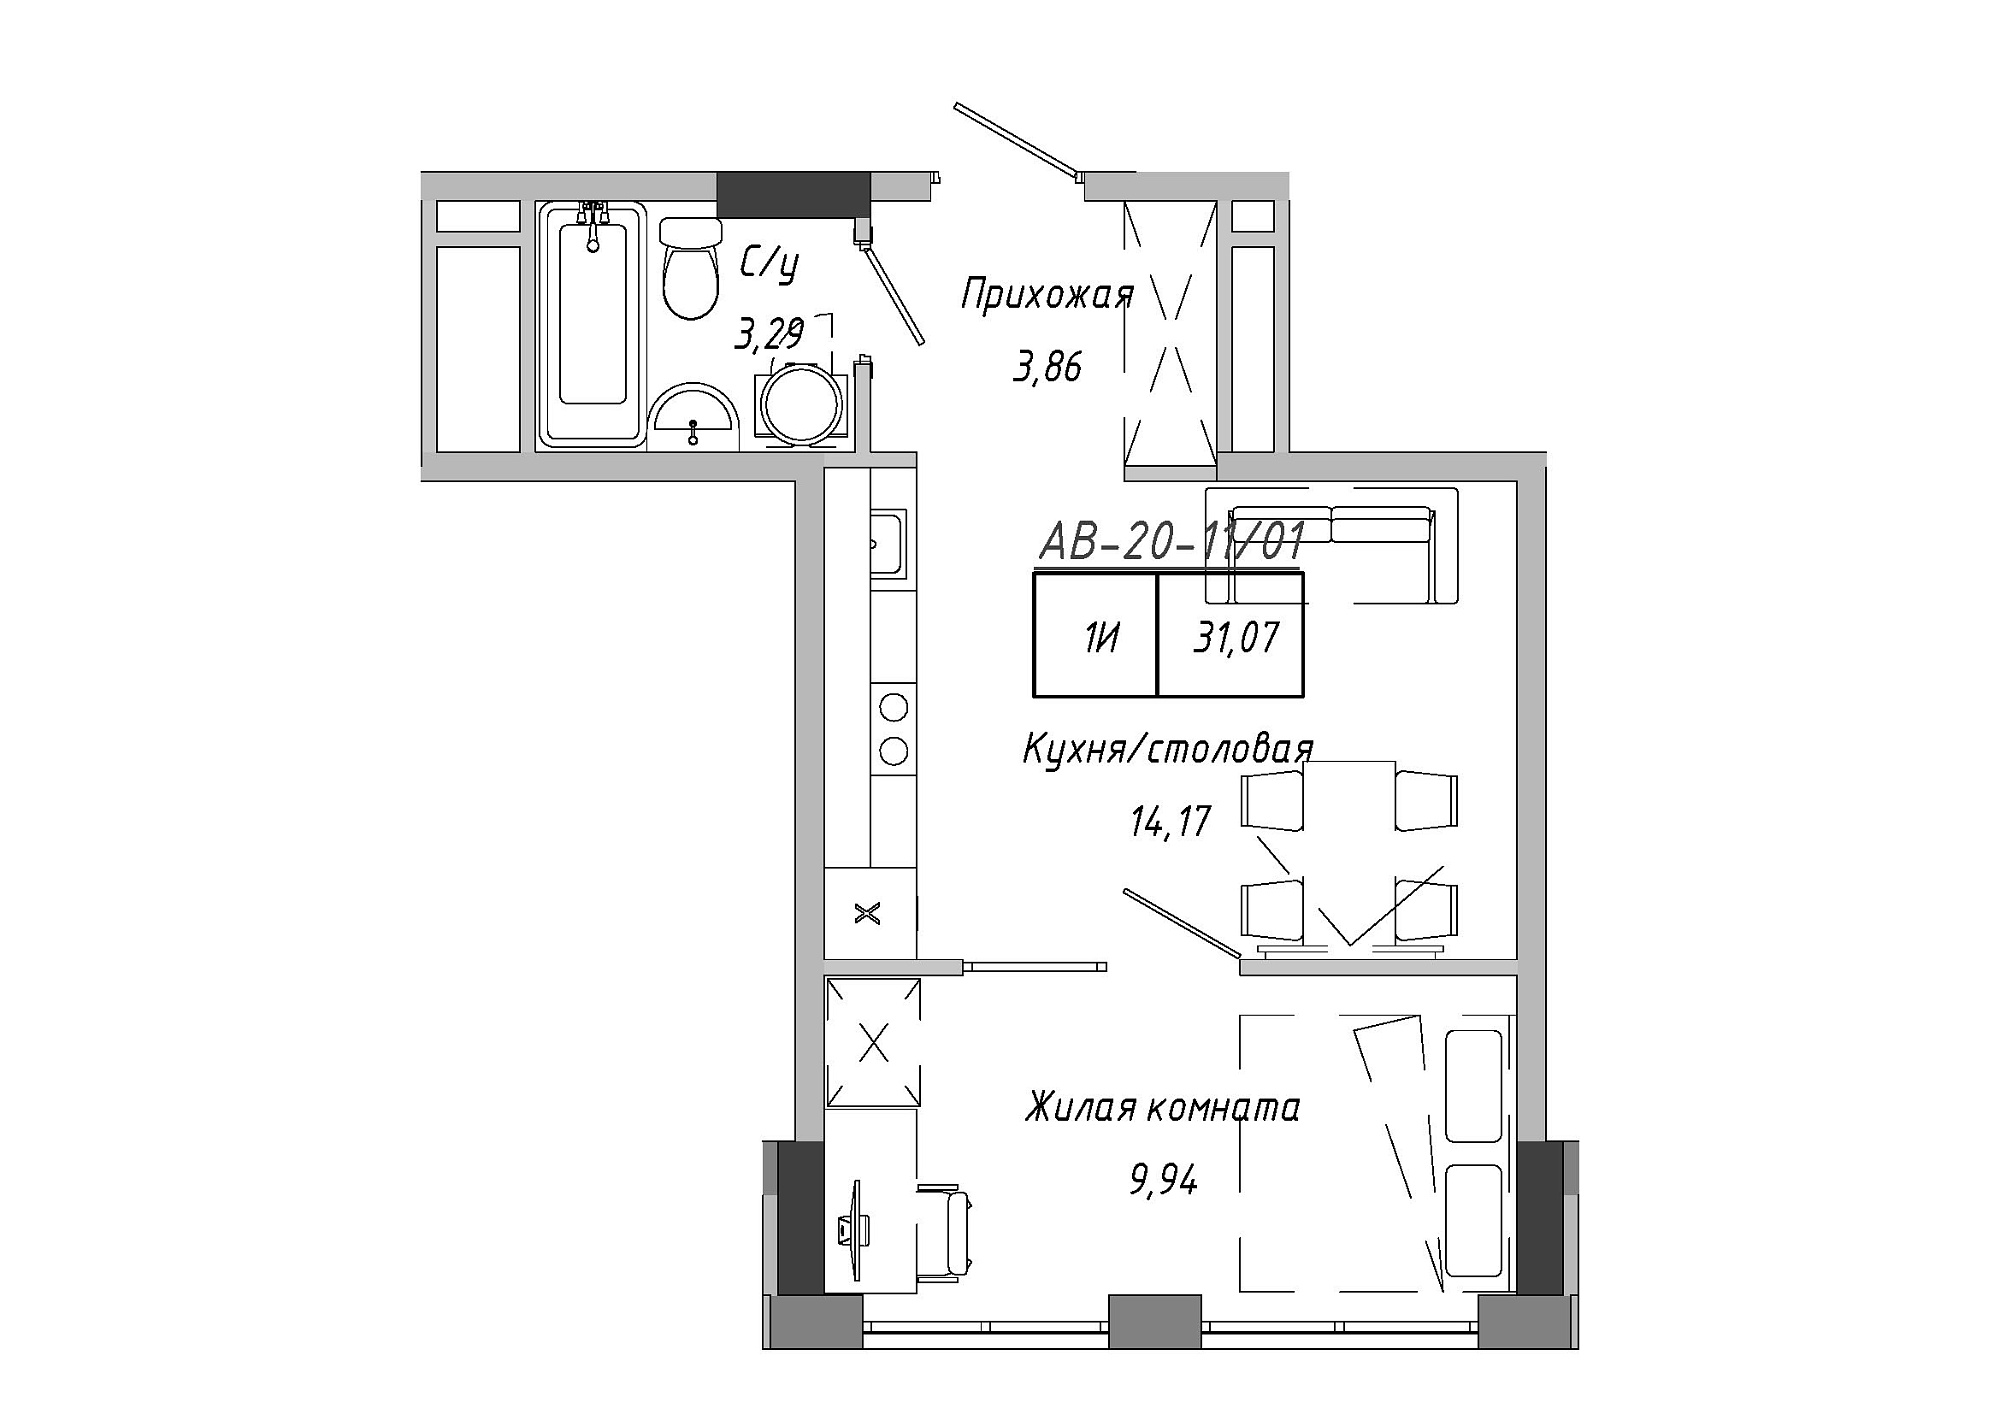 Планування 1-к квартира площею 30.28м2, AB-20-11/00001.